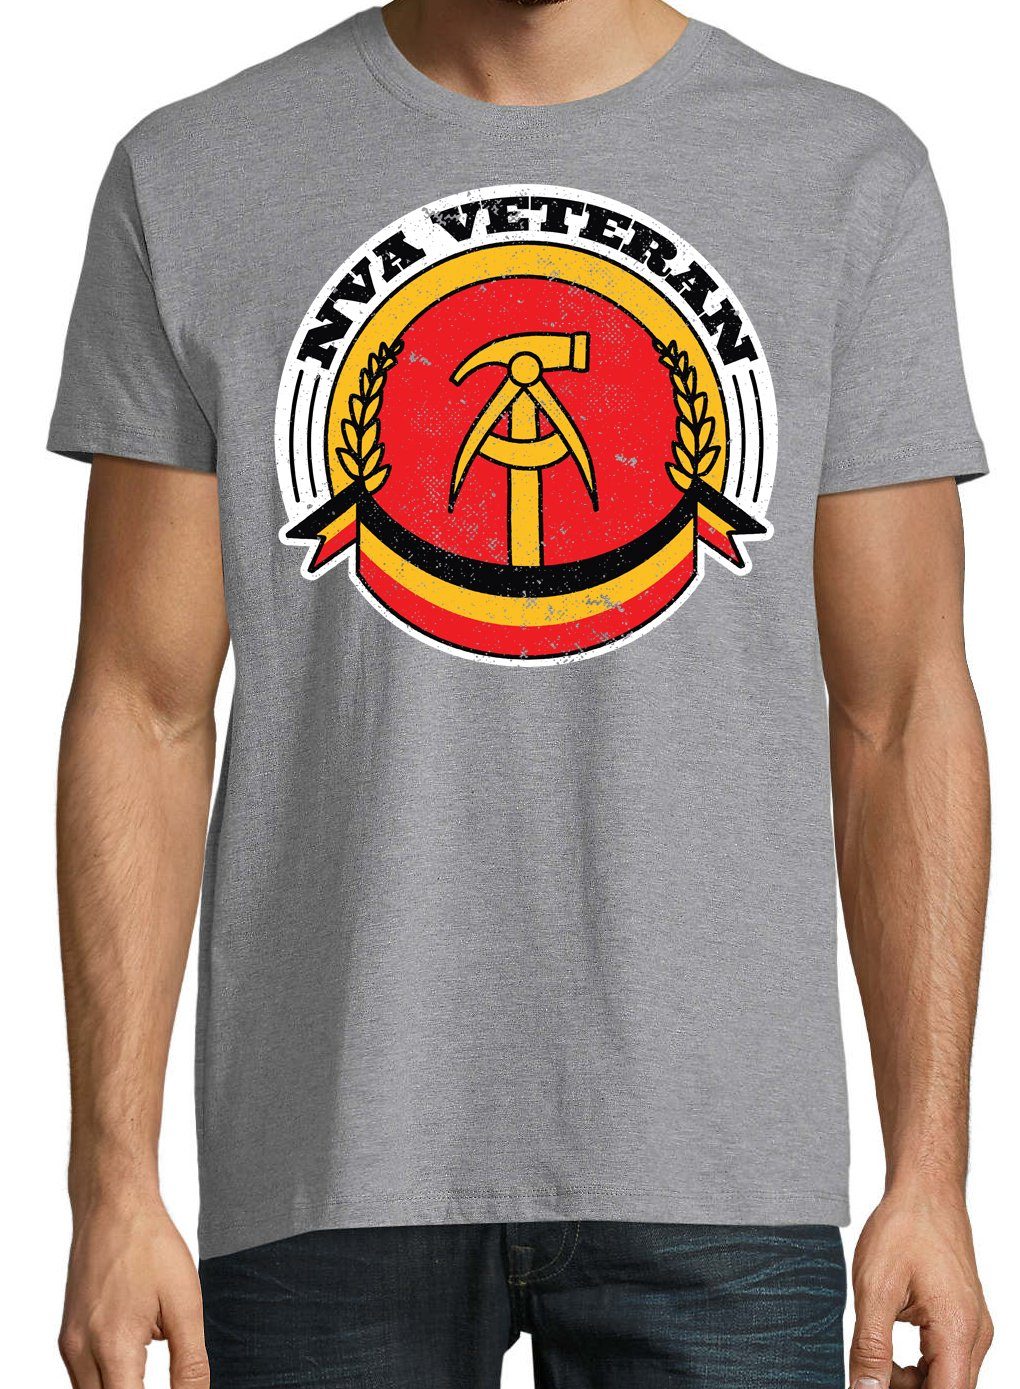 Frontprint mit trendigem Herren Designz Veteran T-Shirt Shirt NVA Youth Grau